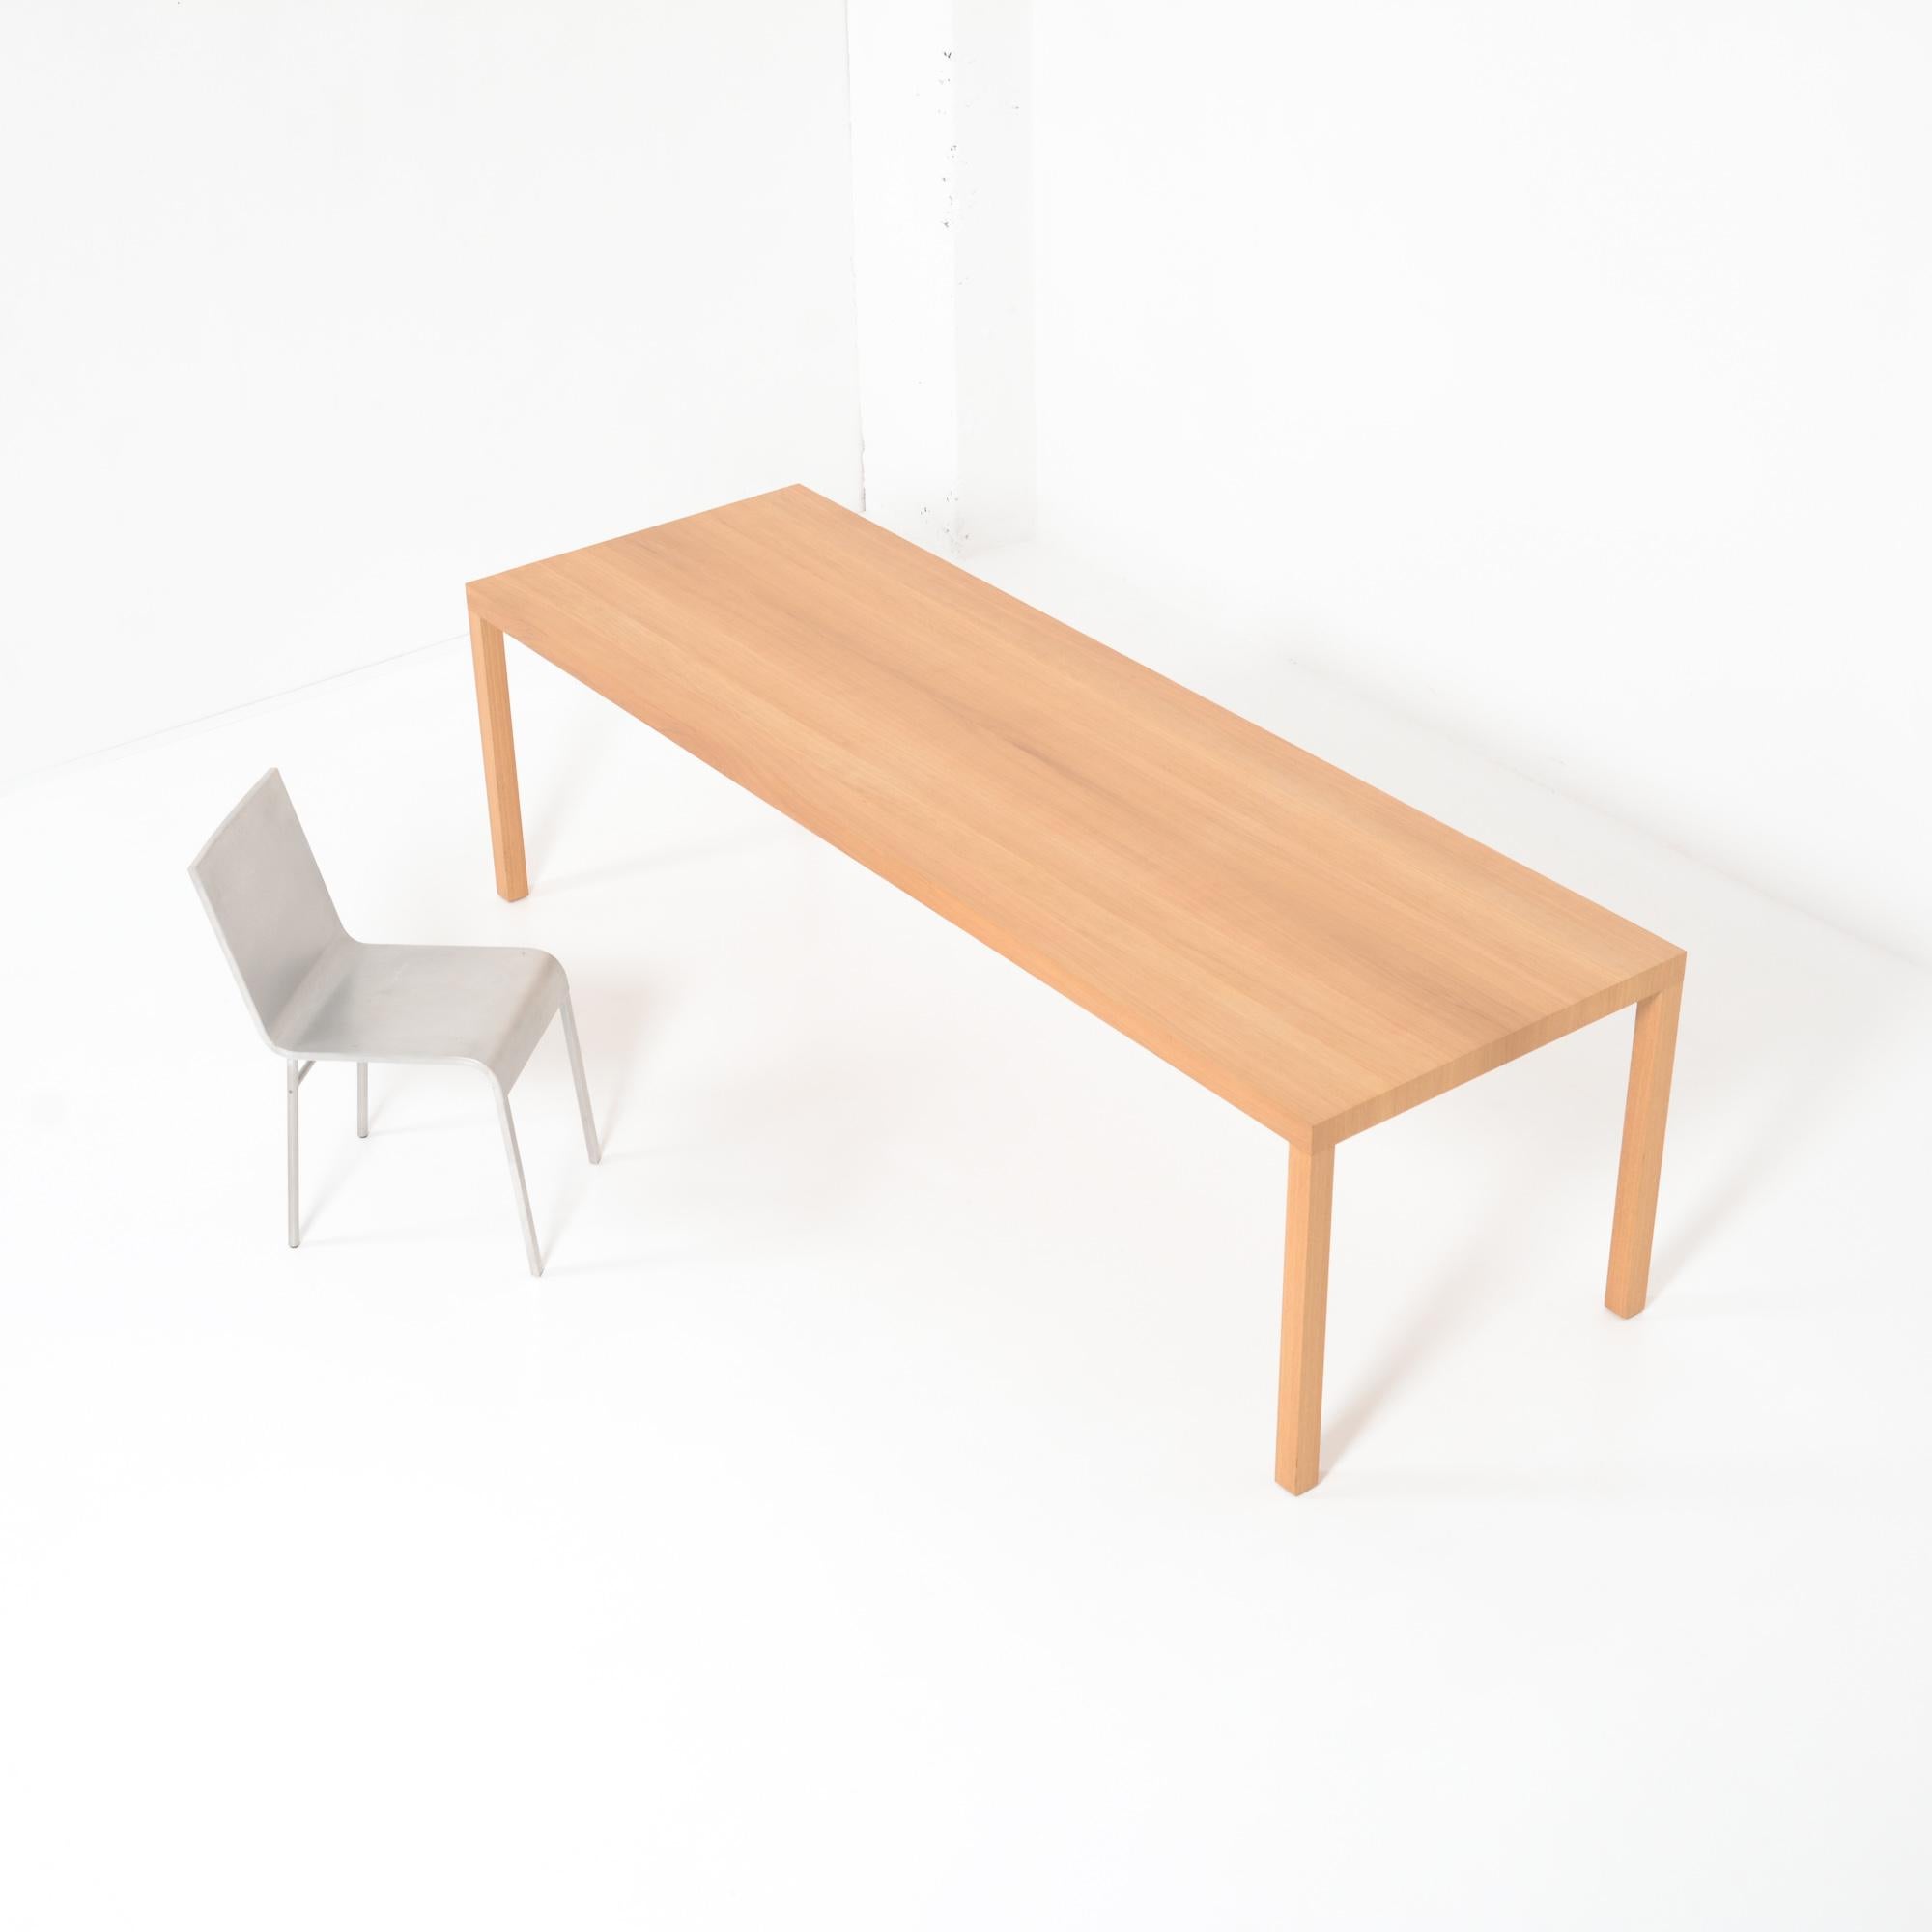 Dieser Tisch wurde 1988 von Maarten Van Severen entworfen. Er ist aus massiver Eiche gefertigt. Diese Tabelle wurde von Top-Mouton (1999) erstellt.
Minimalismus versus Maximalismus: Maarten Van Severen hat diesen Tisch entworfen, um benutzt zu